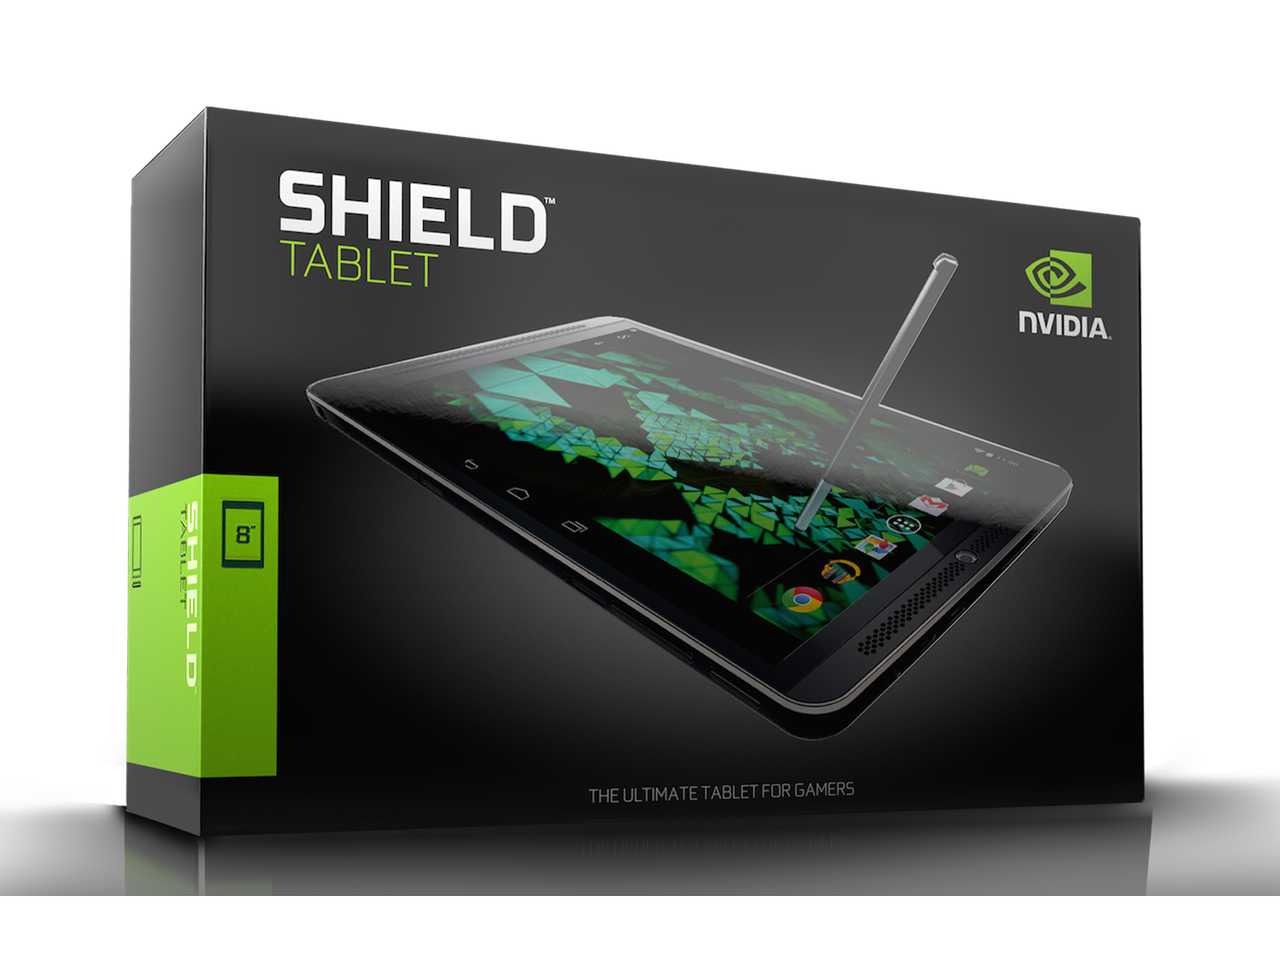 Обзор планшета nvidia shield tablet: обзор на русском, характеристики, цена в россии, отзывы